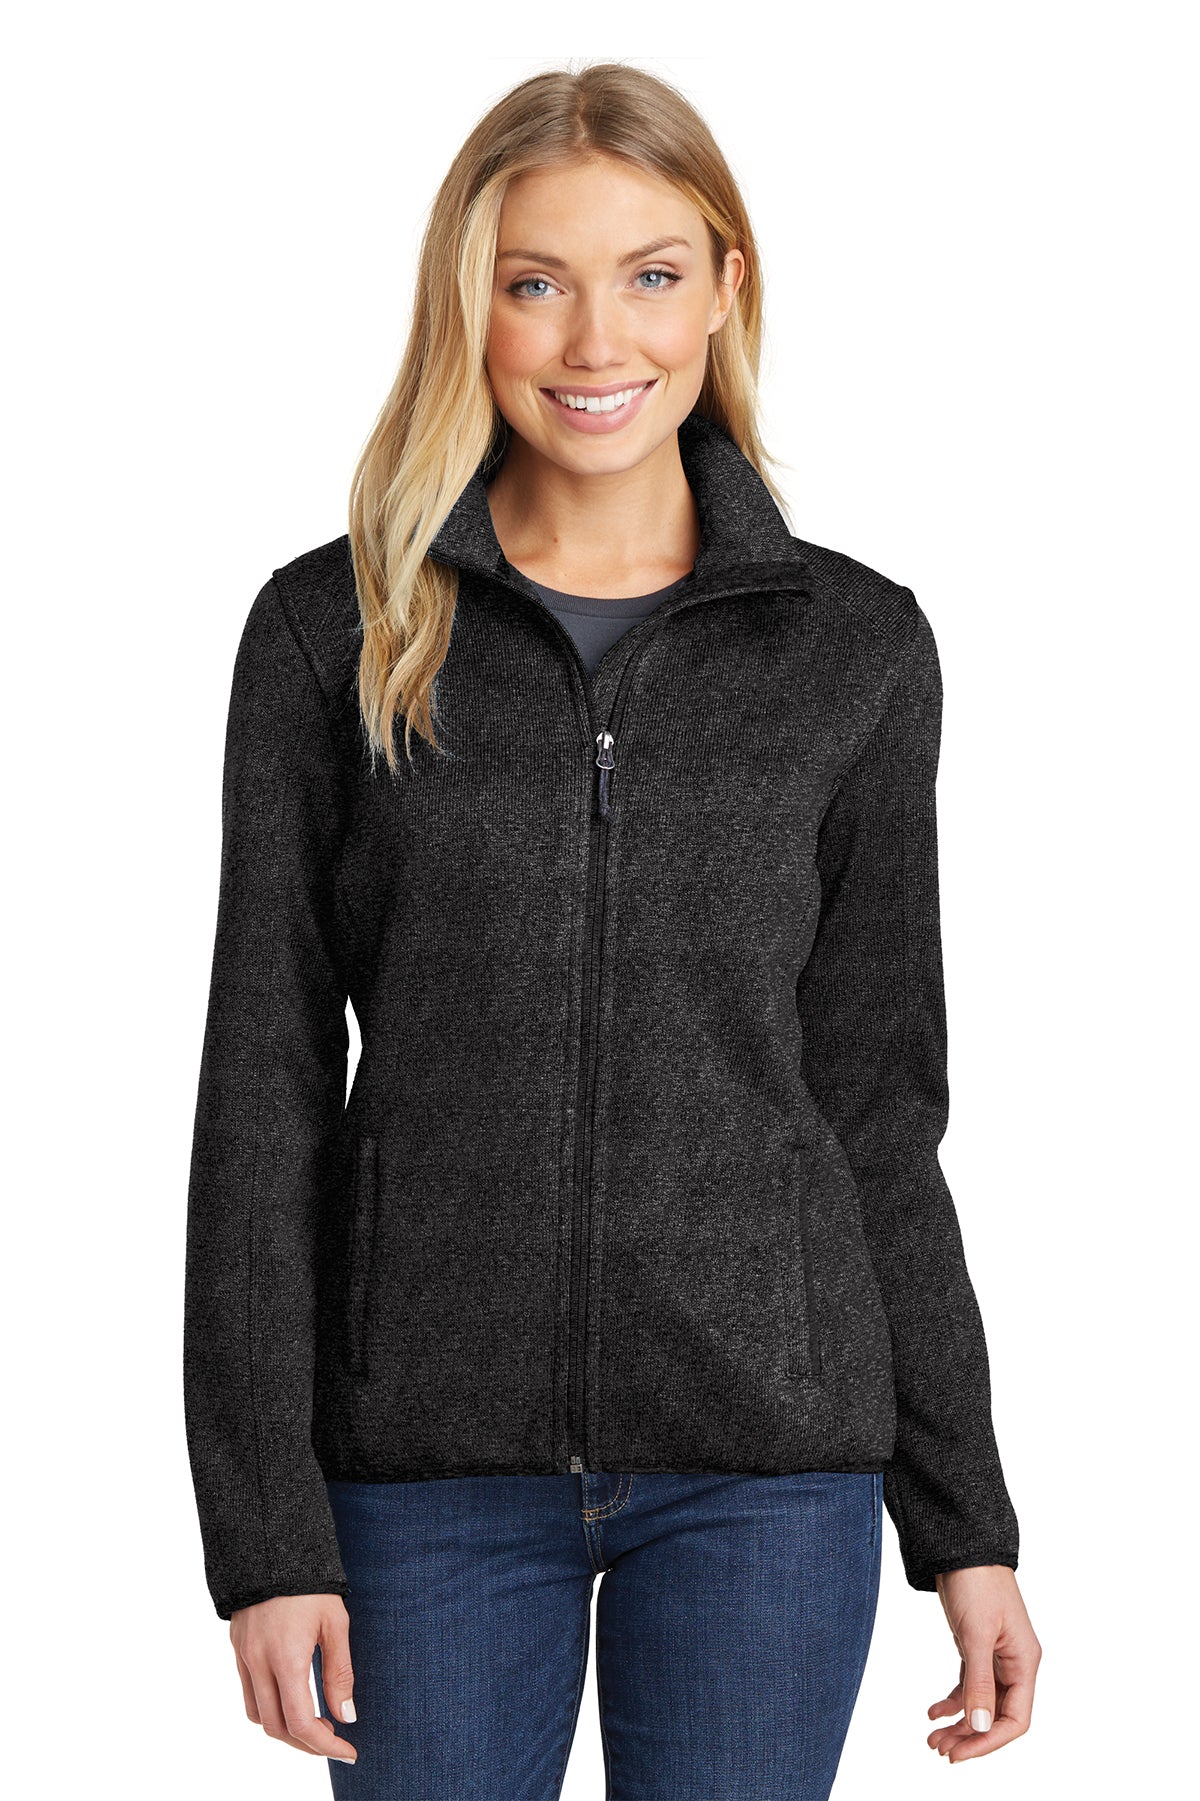 PA L232 Women's Sweater Fleece Jacket Black 